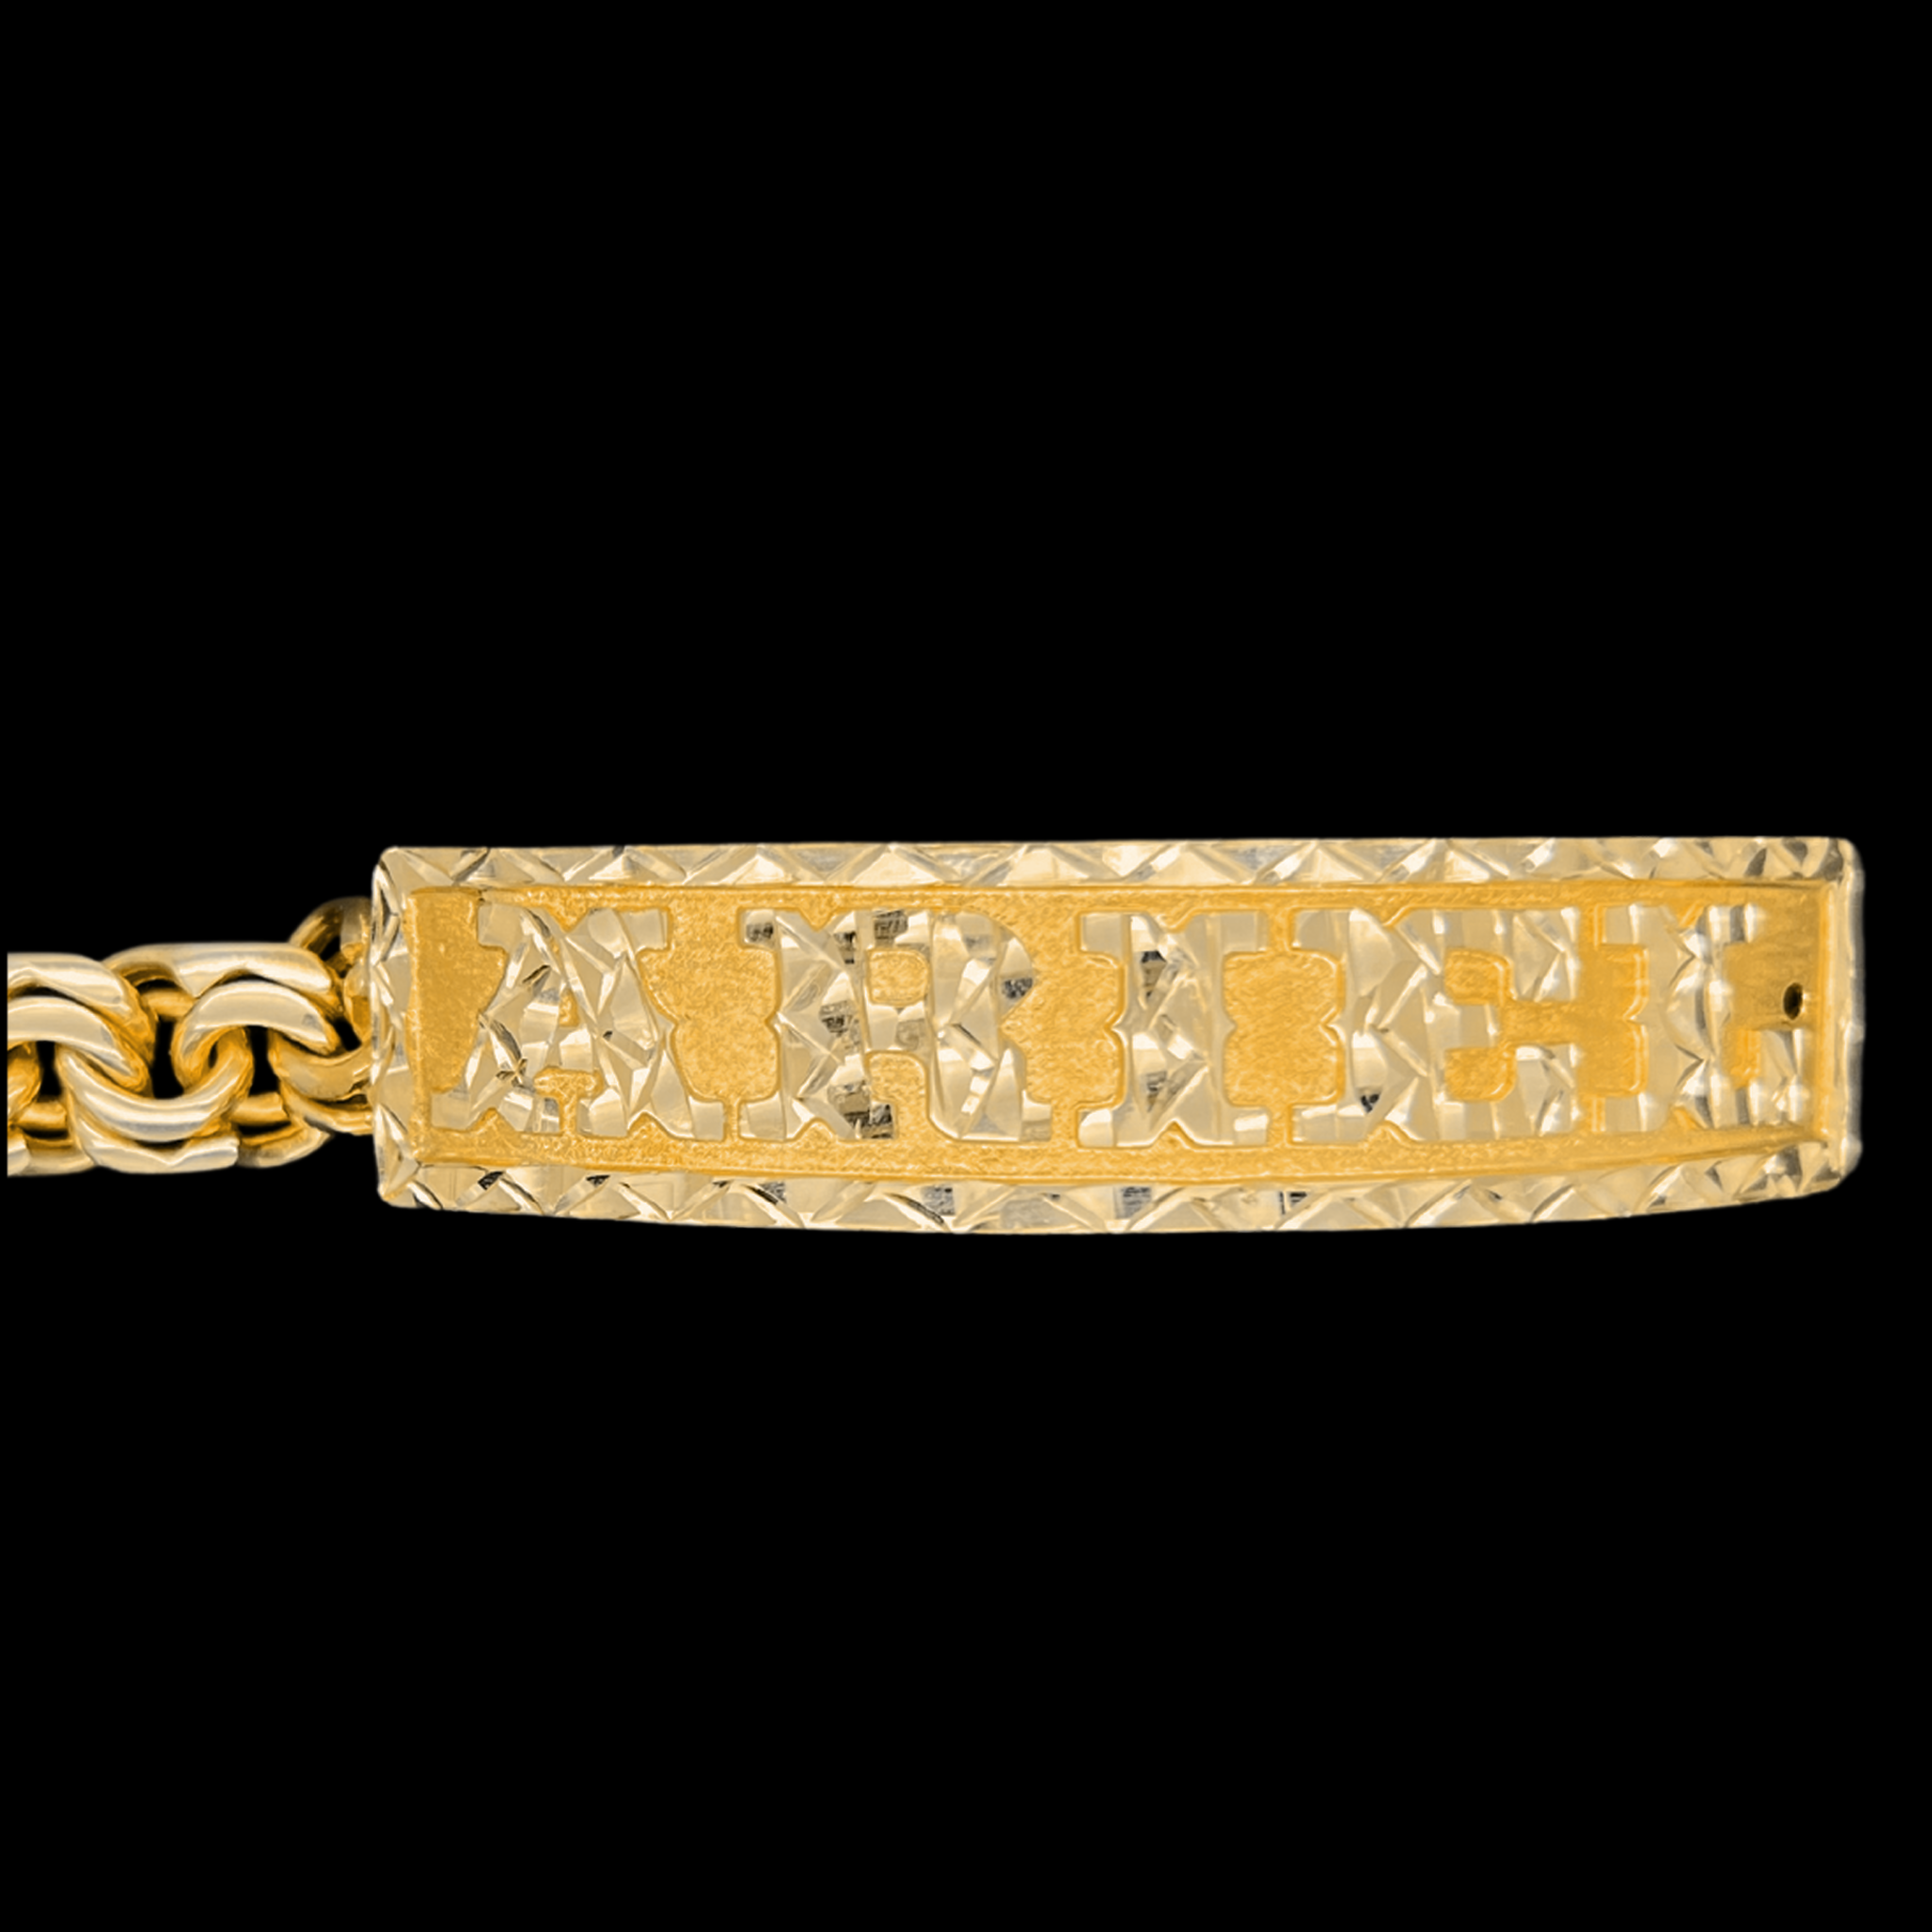 10KT Gold Ladies Chino Link Bracelet with Diamond Cut Border and Letters/ Esclava Tejido Chino para Mujer en Oro 10KT con Bicel y Letras Diamantadas